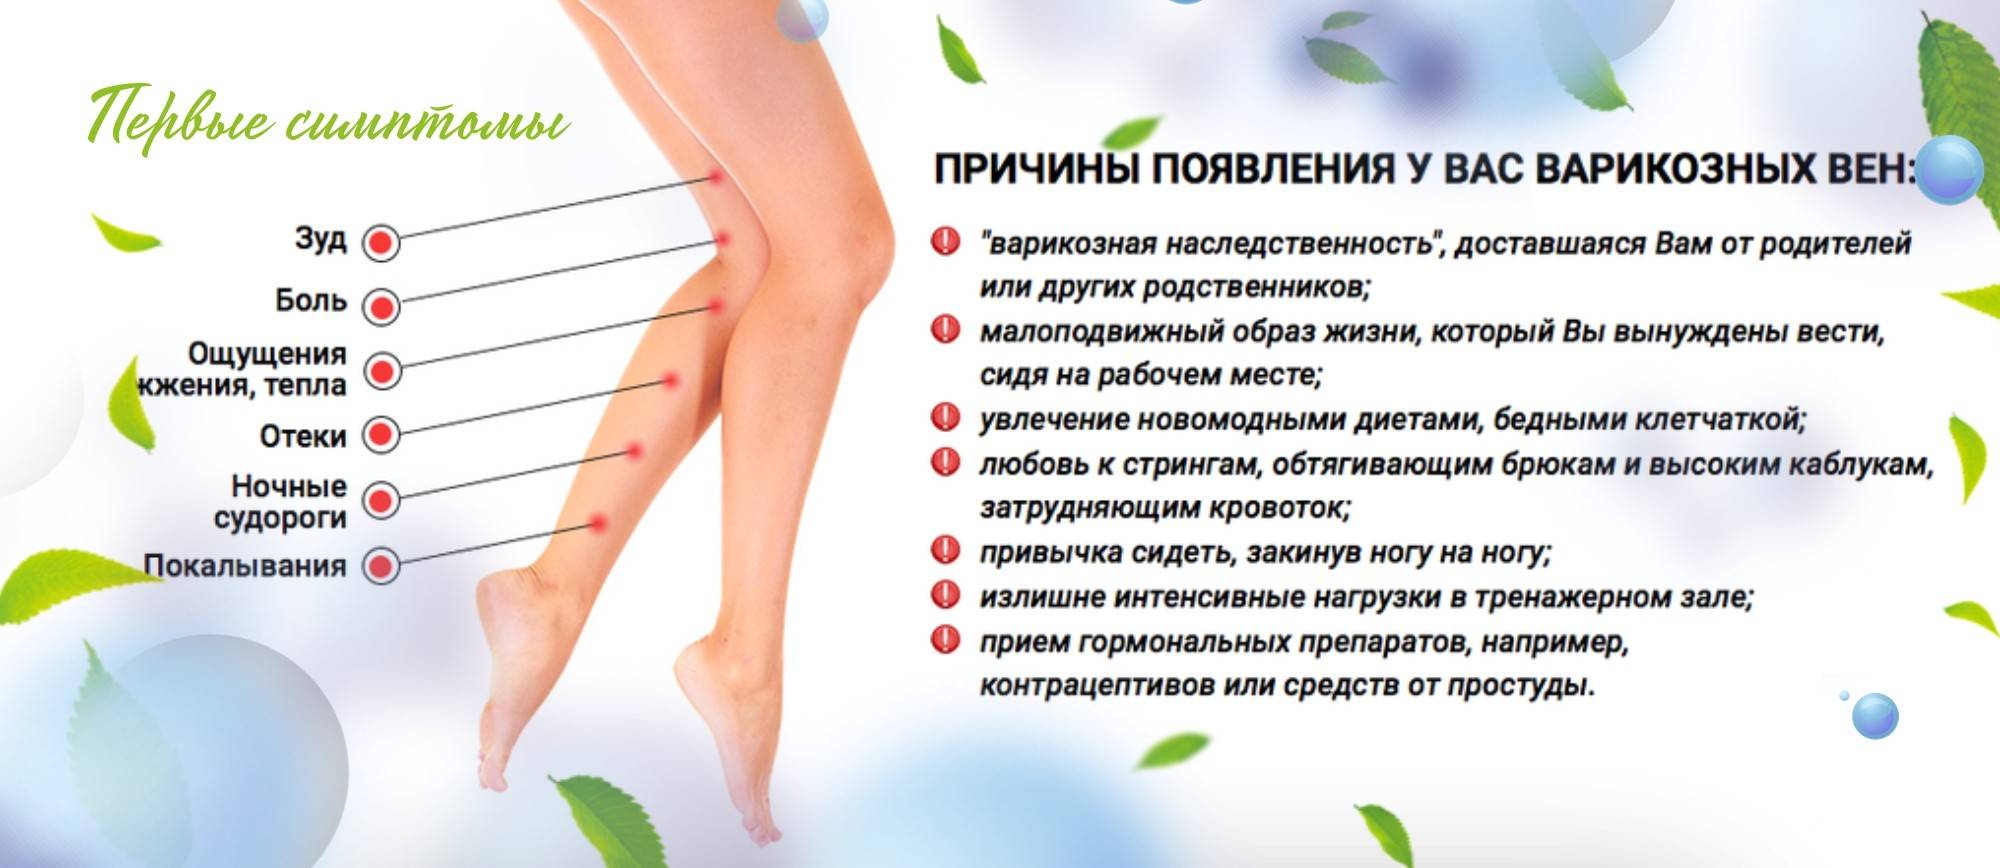 Мурашки и покалывания в ногах, как будто иголками - находим причины и лечим - лечение ног